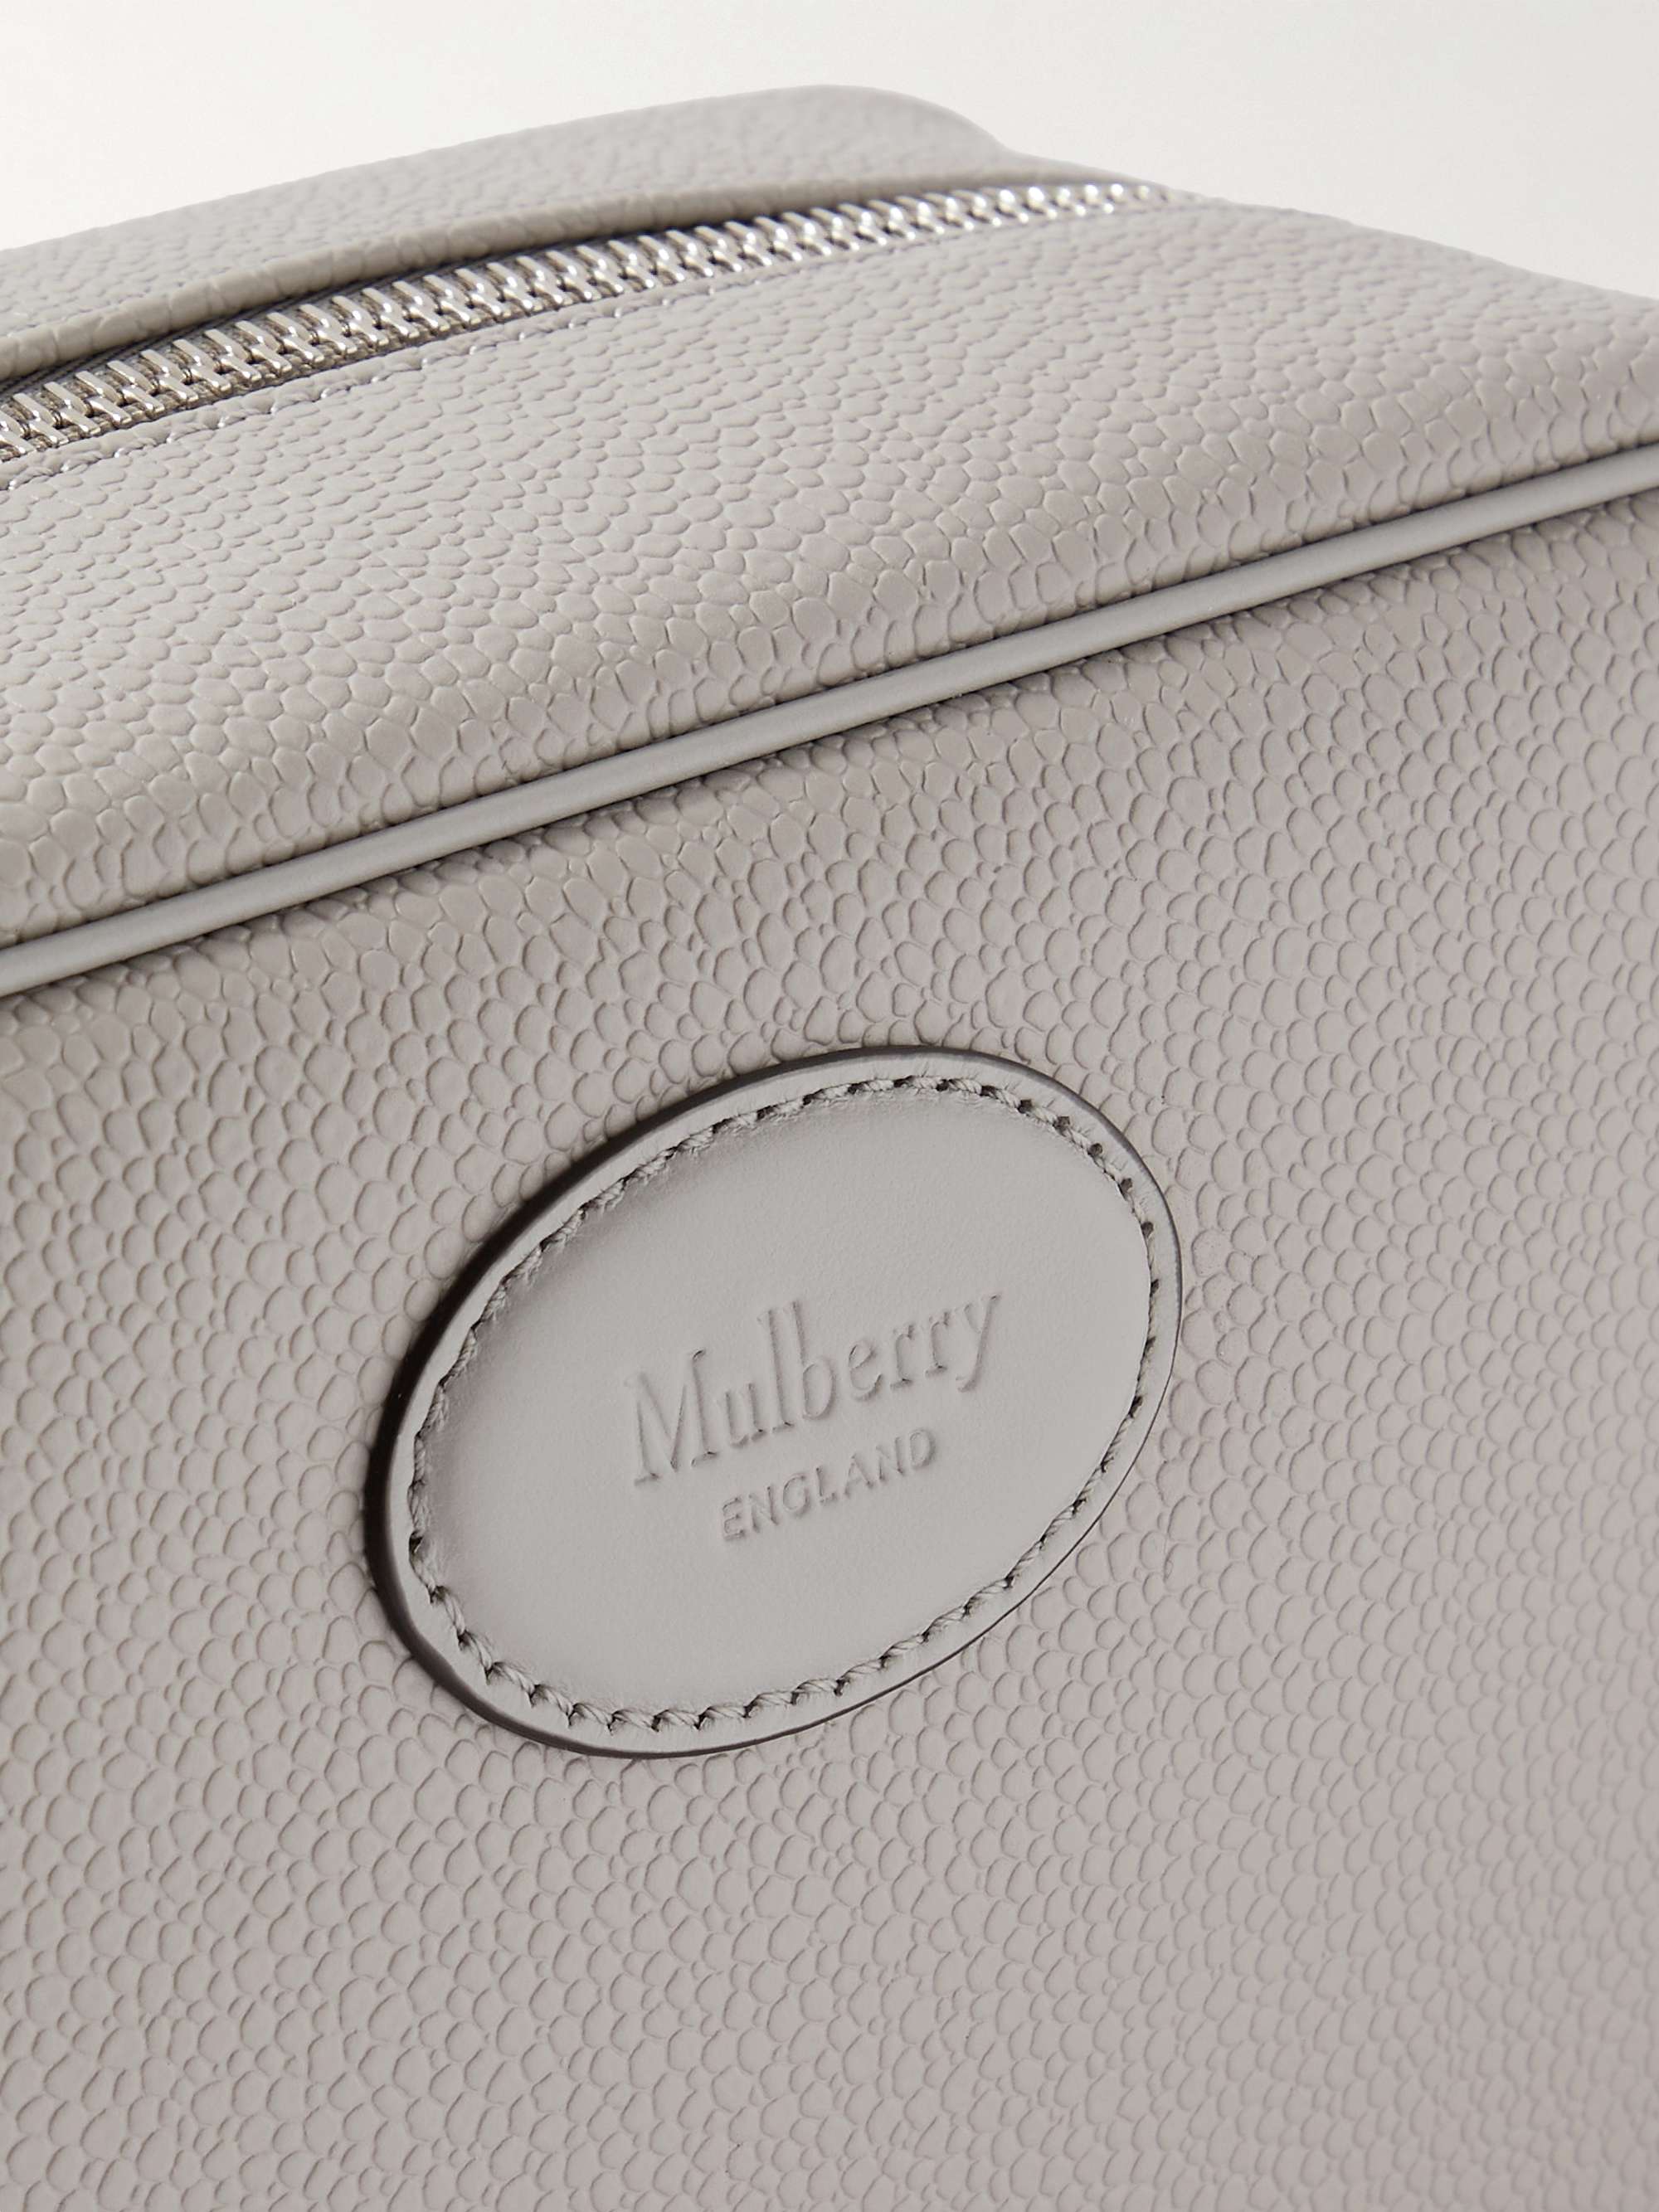 MULBERRY Leather-Trimmed Scotchgrain Wash Bag for Men | MR PORTER